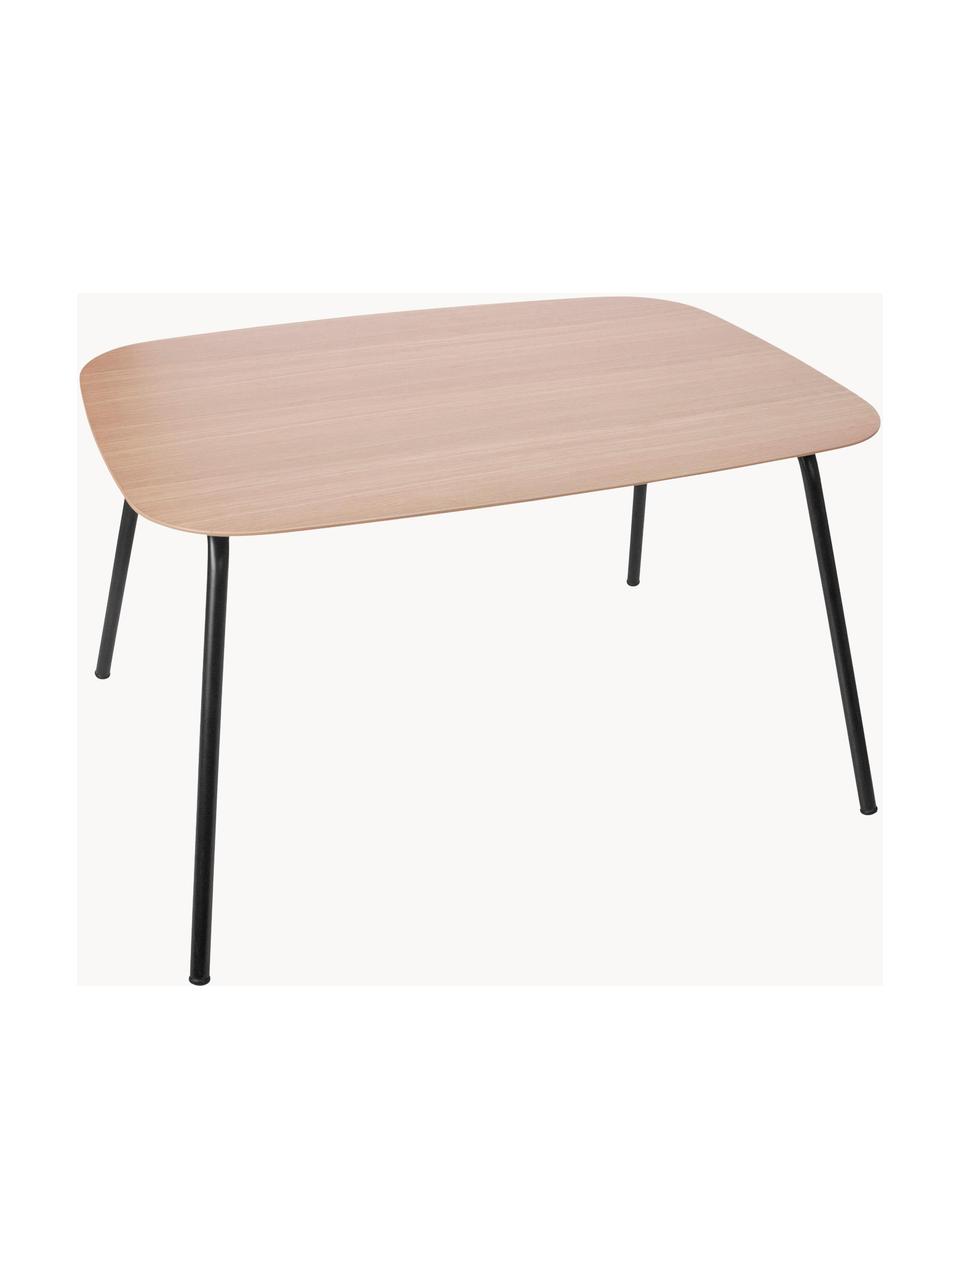 Dětský stůl Oakee, Bukové dřevo, černá, Š 70 cm, V 45 cm